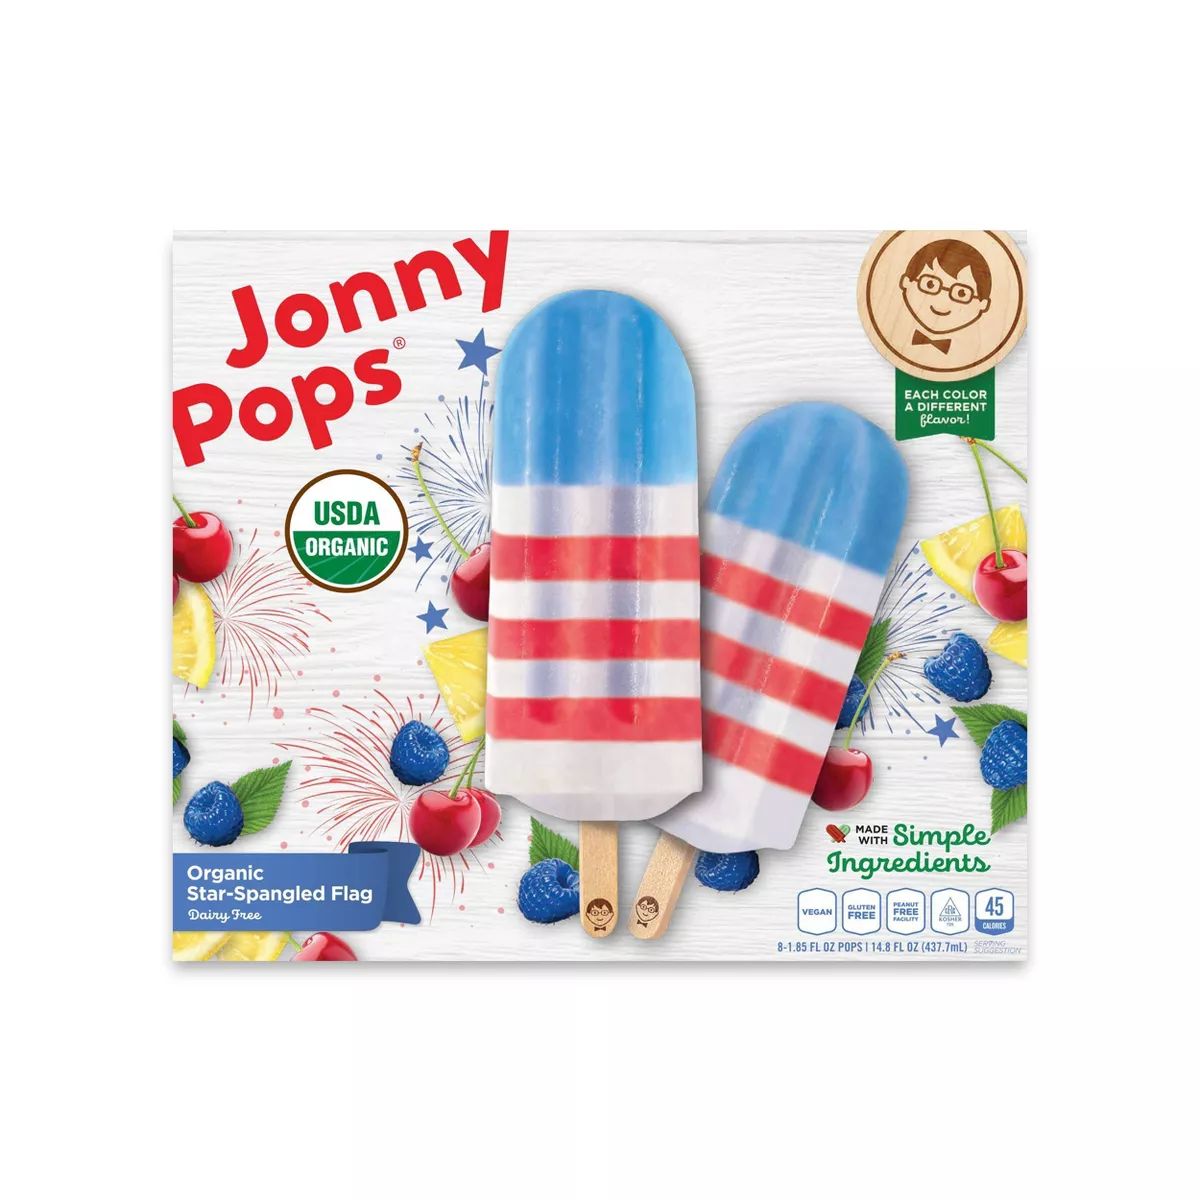 JonnyPops Organic Frozen Star-Spangled Flag Pop - 8ct/14.8oz | Target